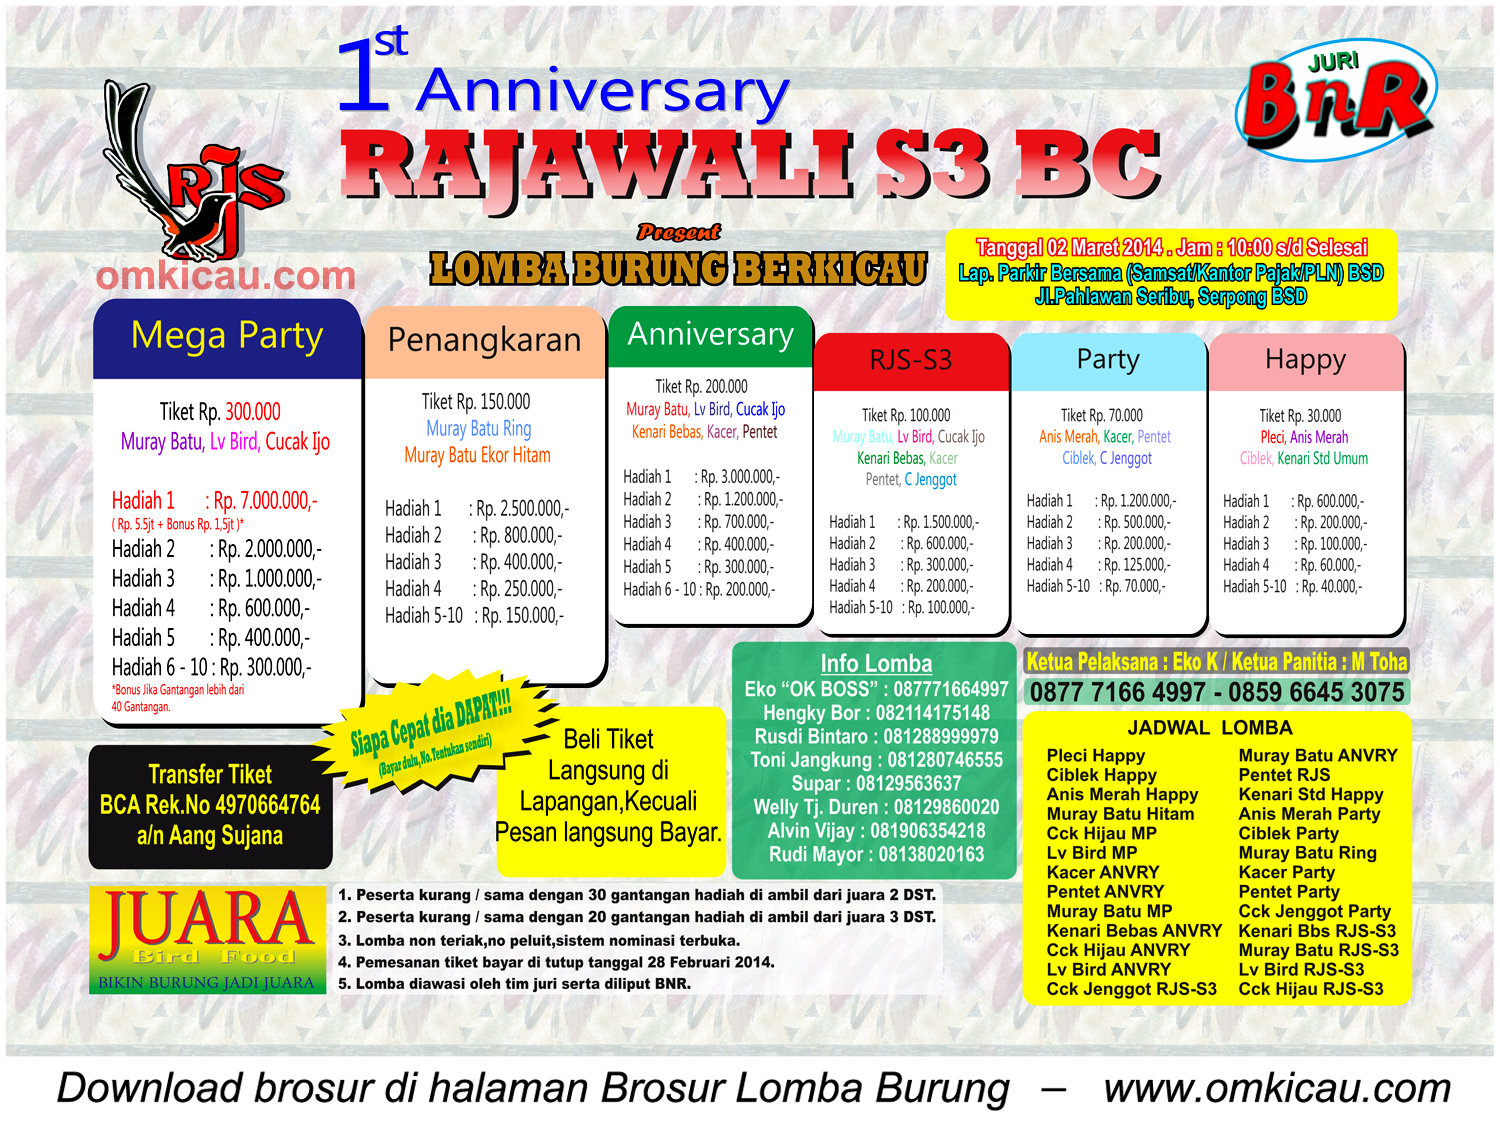 Brosur Lomba Burung 1st Anniversary Rajawali S3 BC, BSD Tangsel, 2 Maret 2014